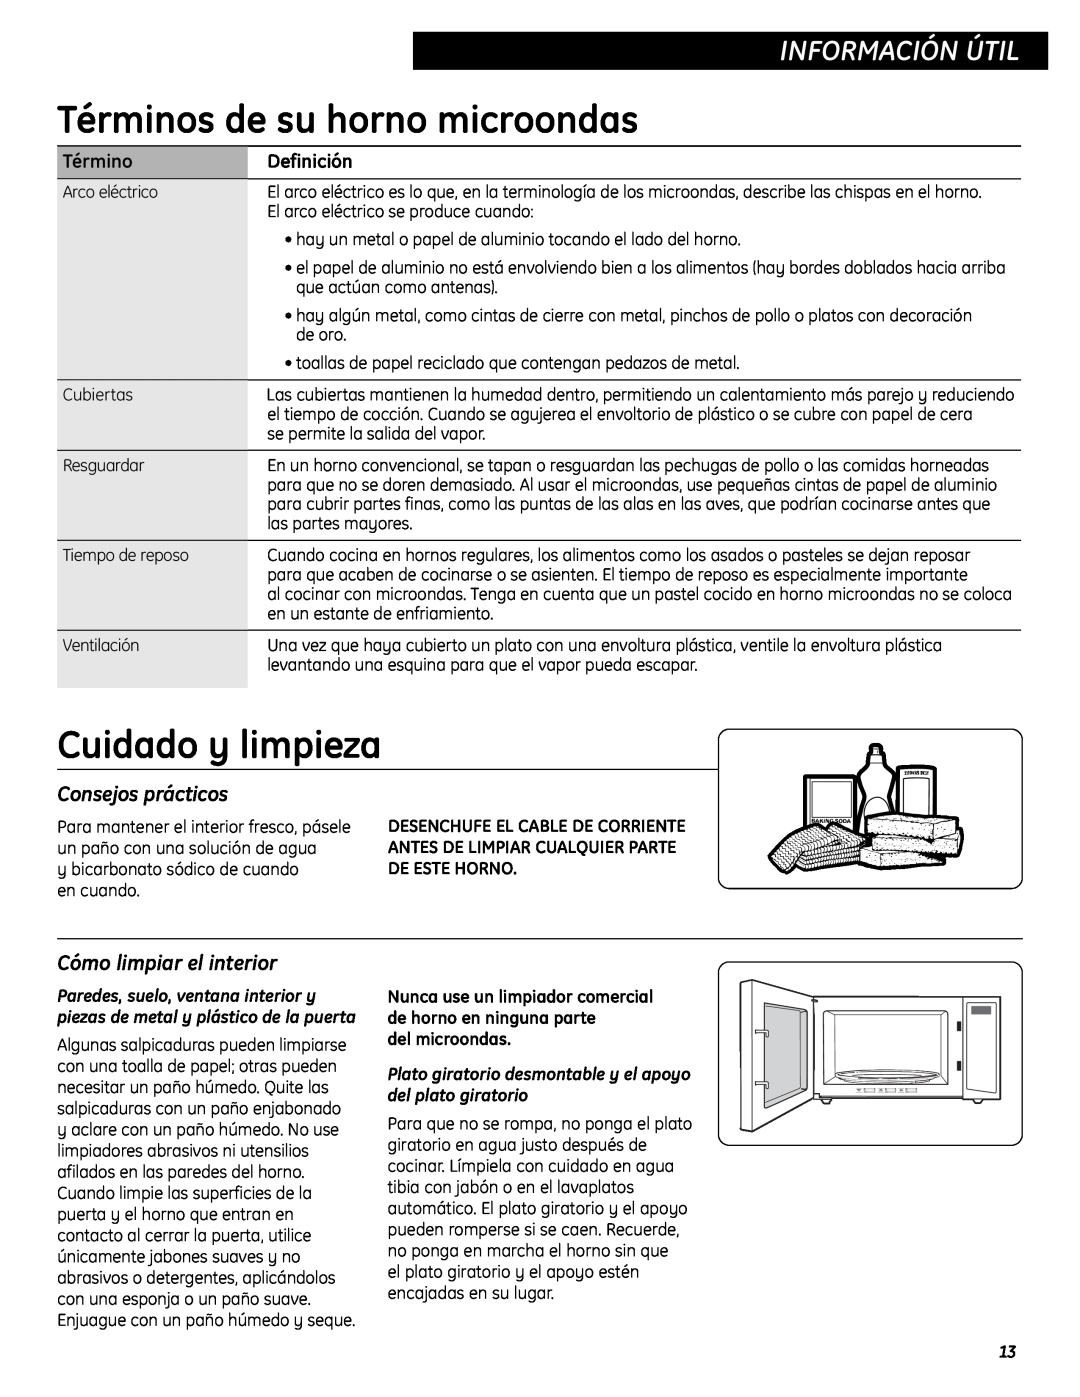 GE WES0930 Términos de su horno microondas, Cuidado y limpieza, Información Útil, Consejos prácticos, Definición 